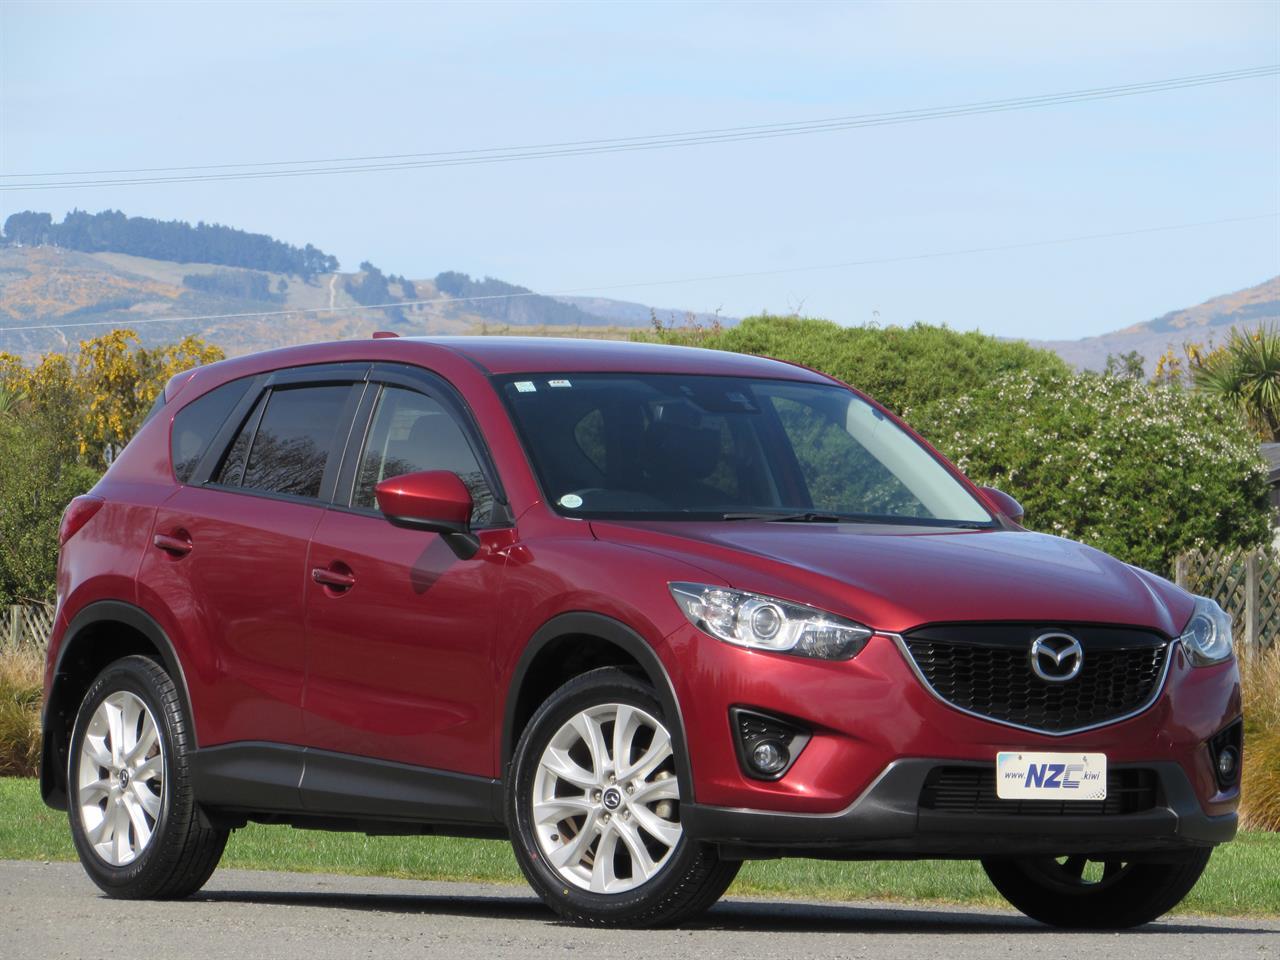 NZC best hot price for 2012 Mazda CX-5 in Christchurch